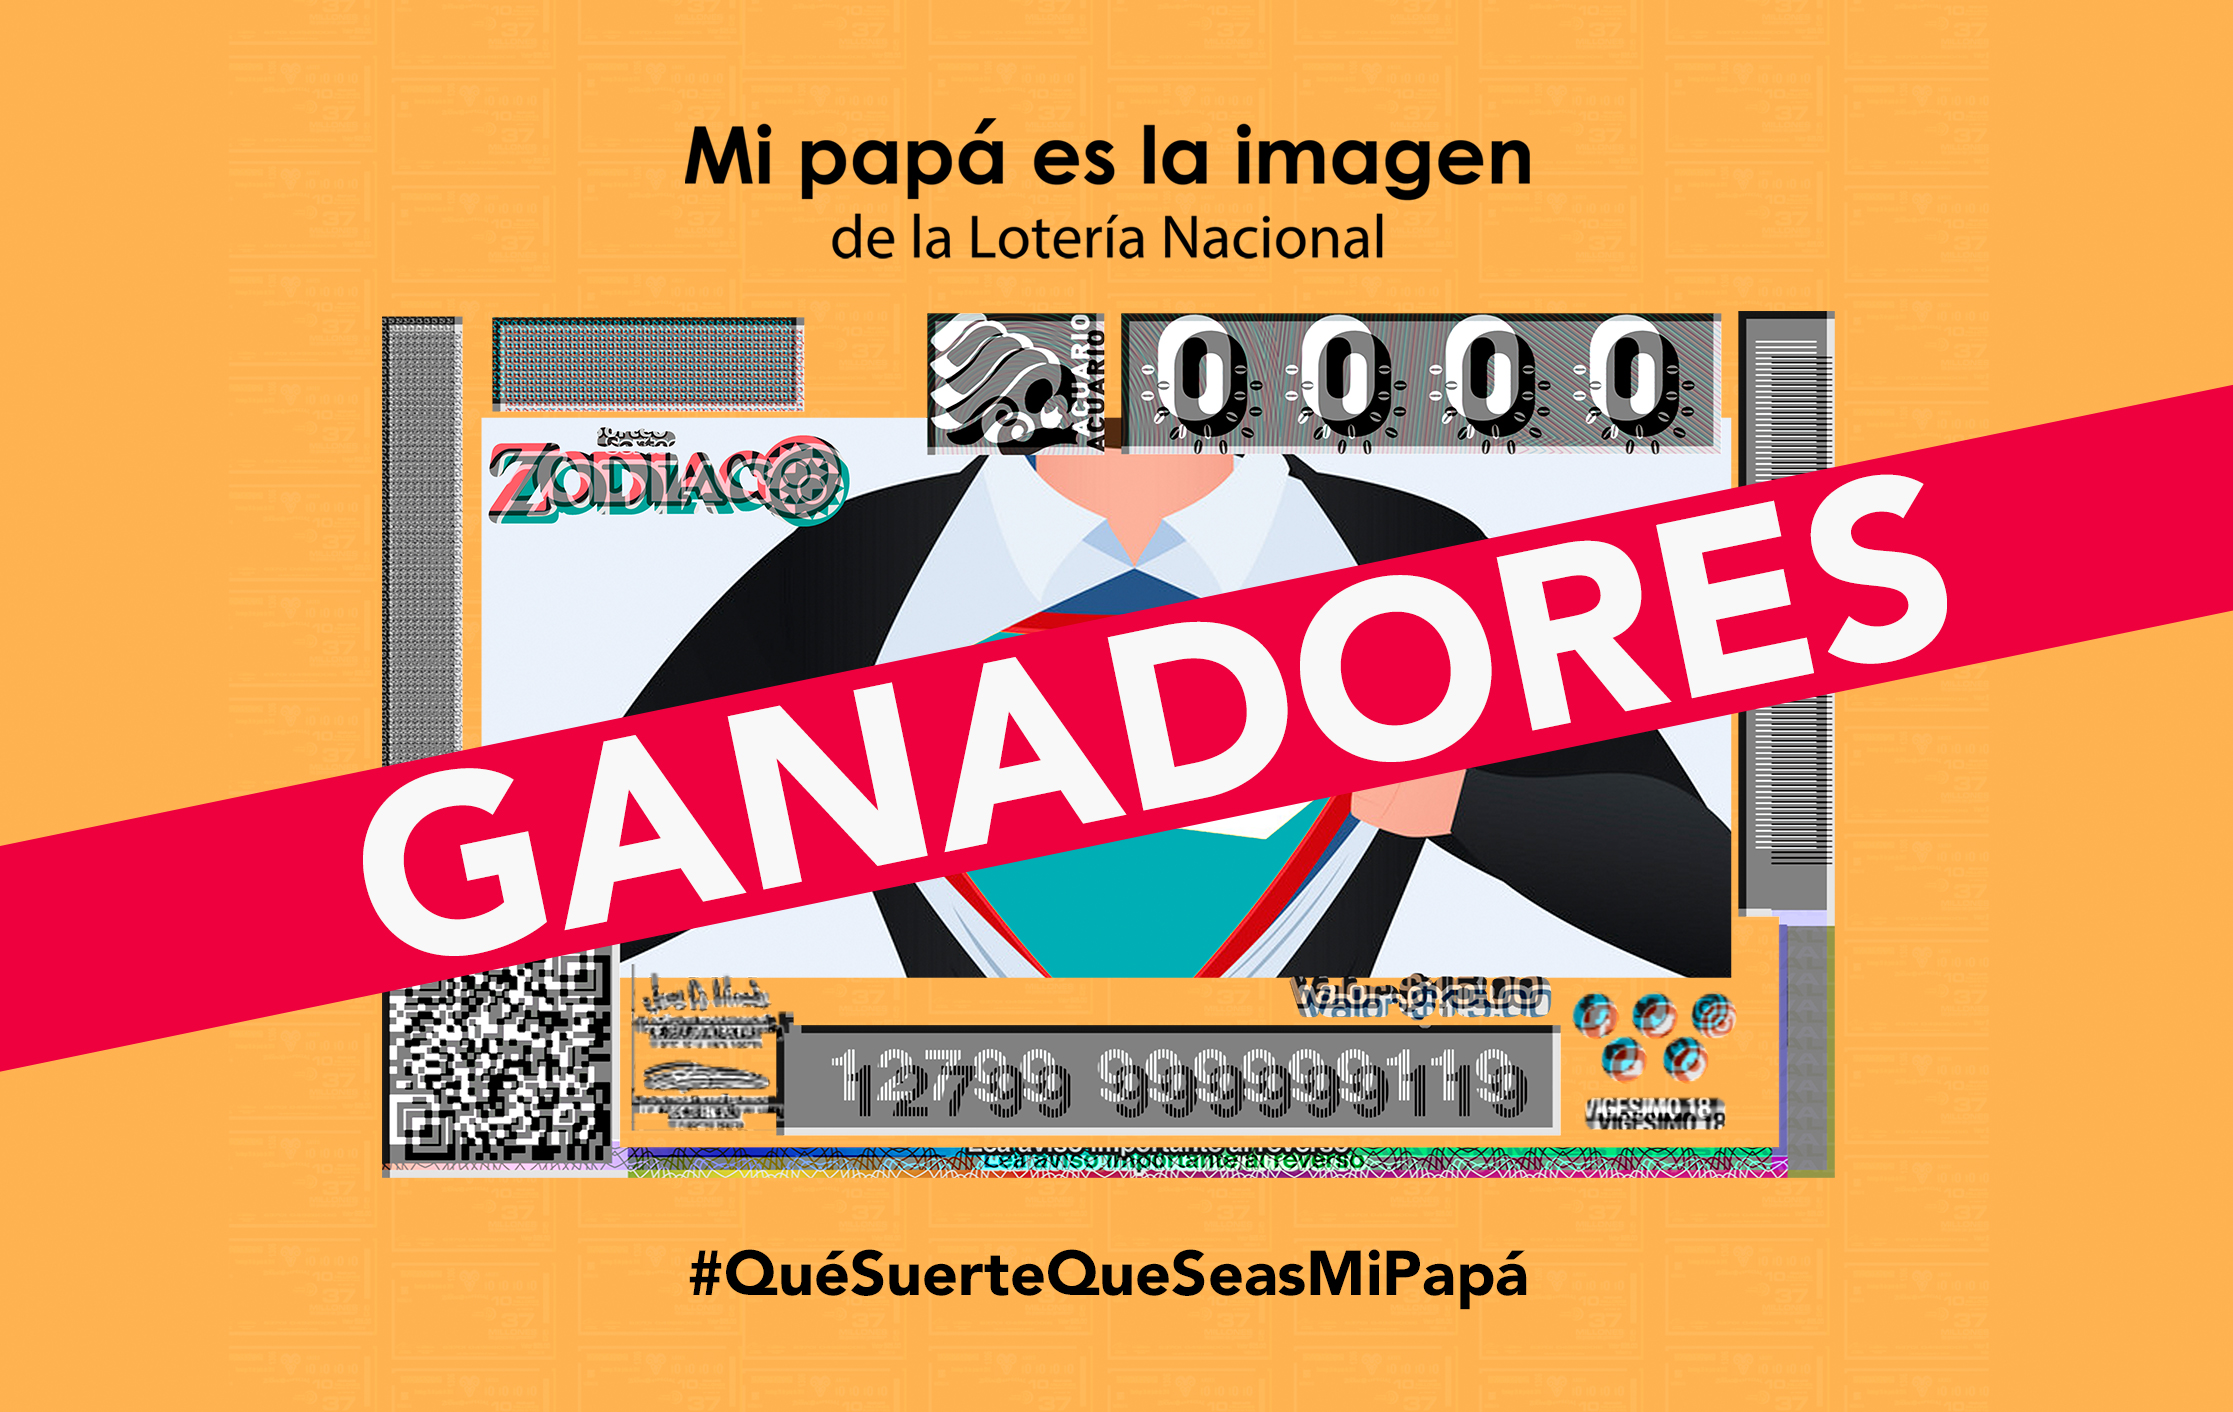 Imagen del concurso "Mi papá es la imagen de la Lotería Nacional"